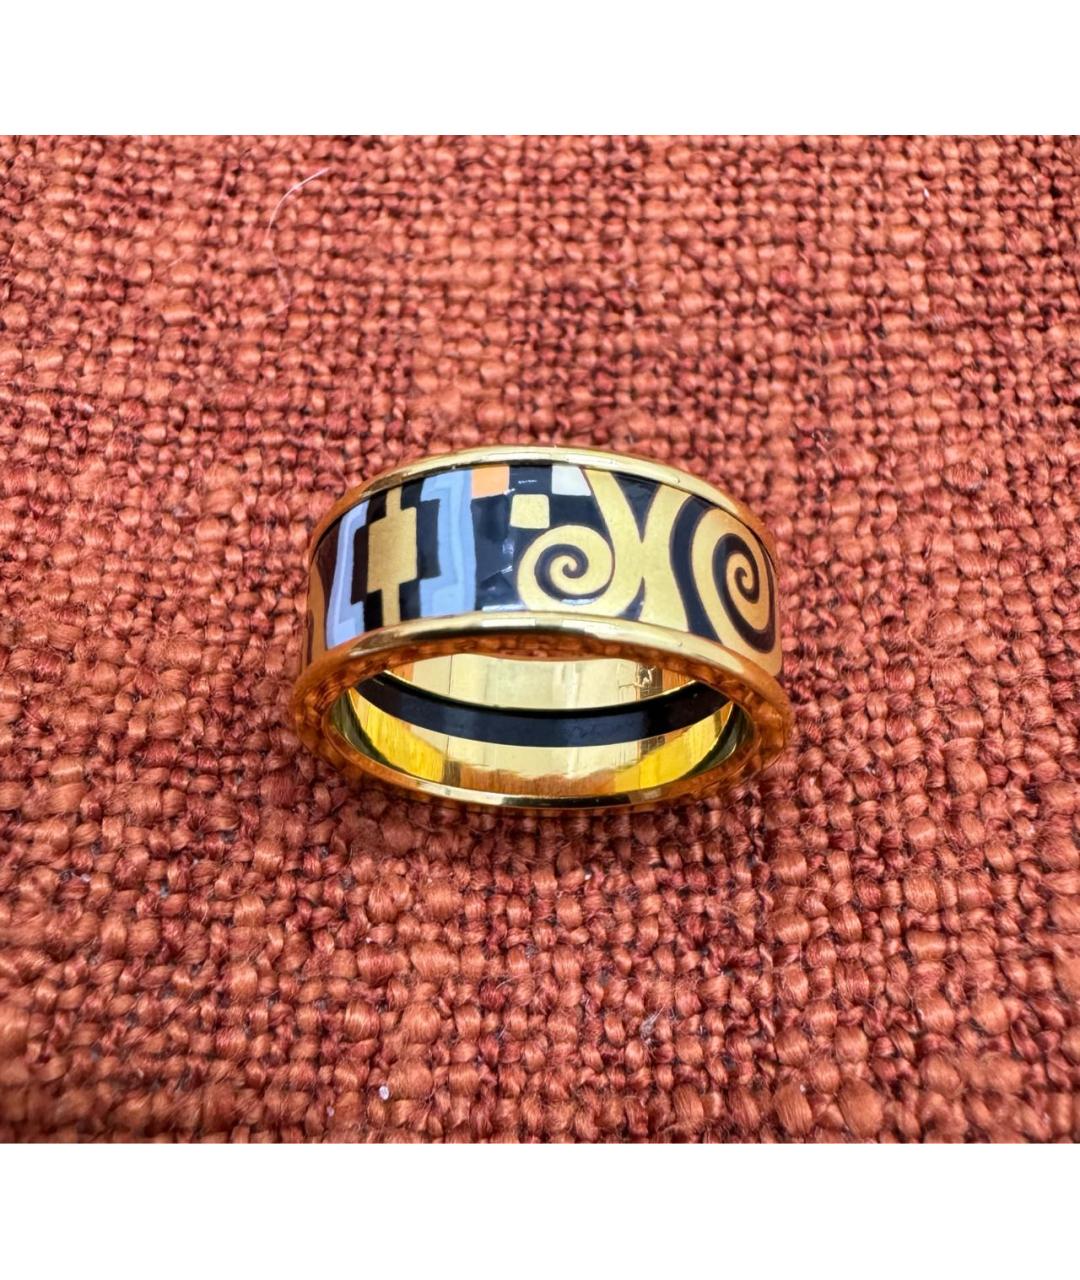 Frey Wille Мульти позолоченное кольцо, фото 3